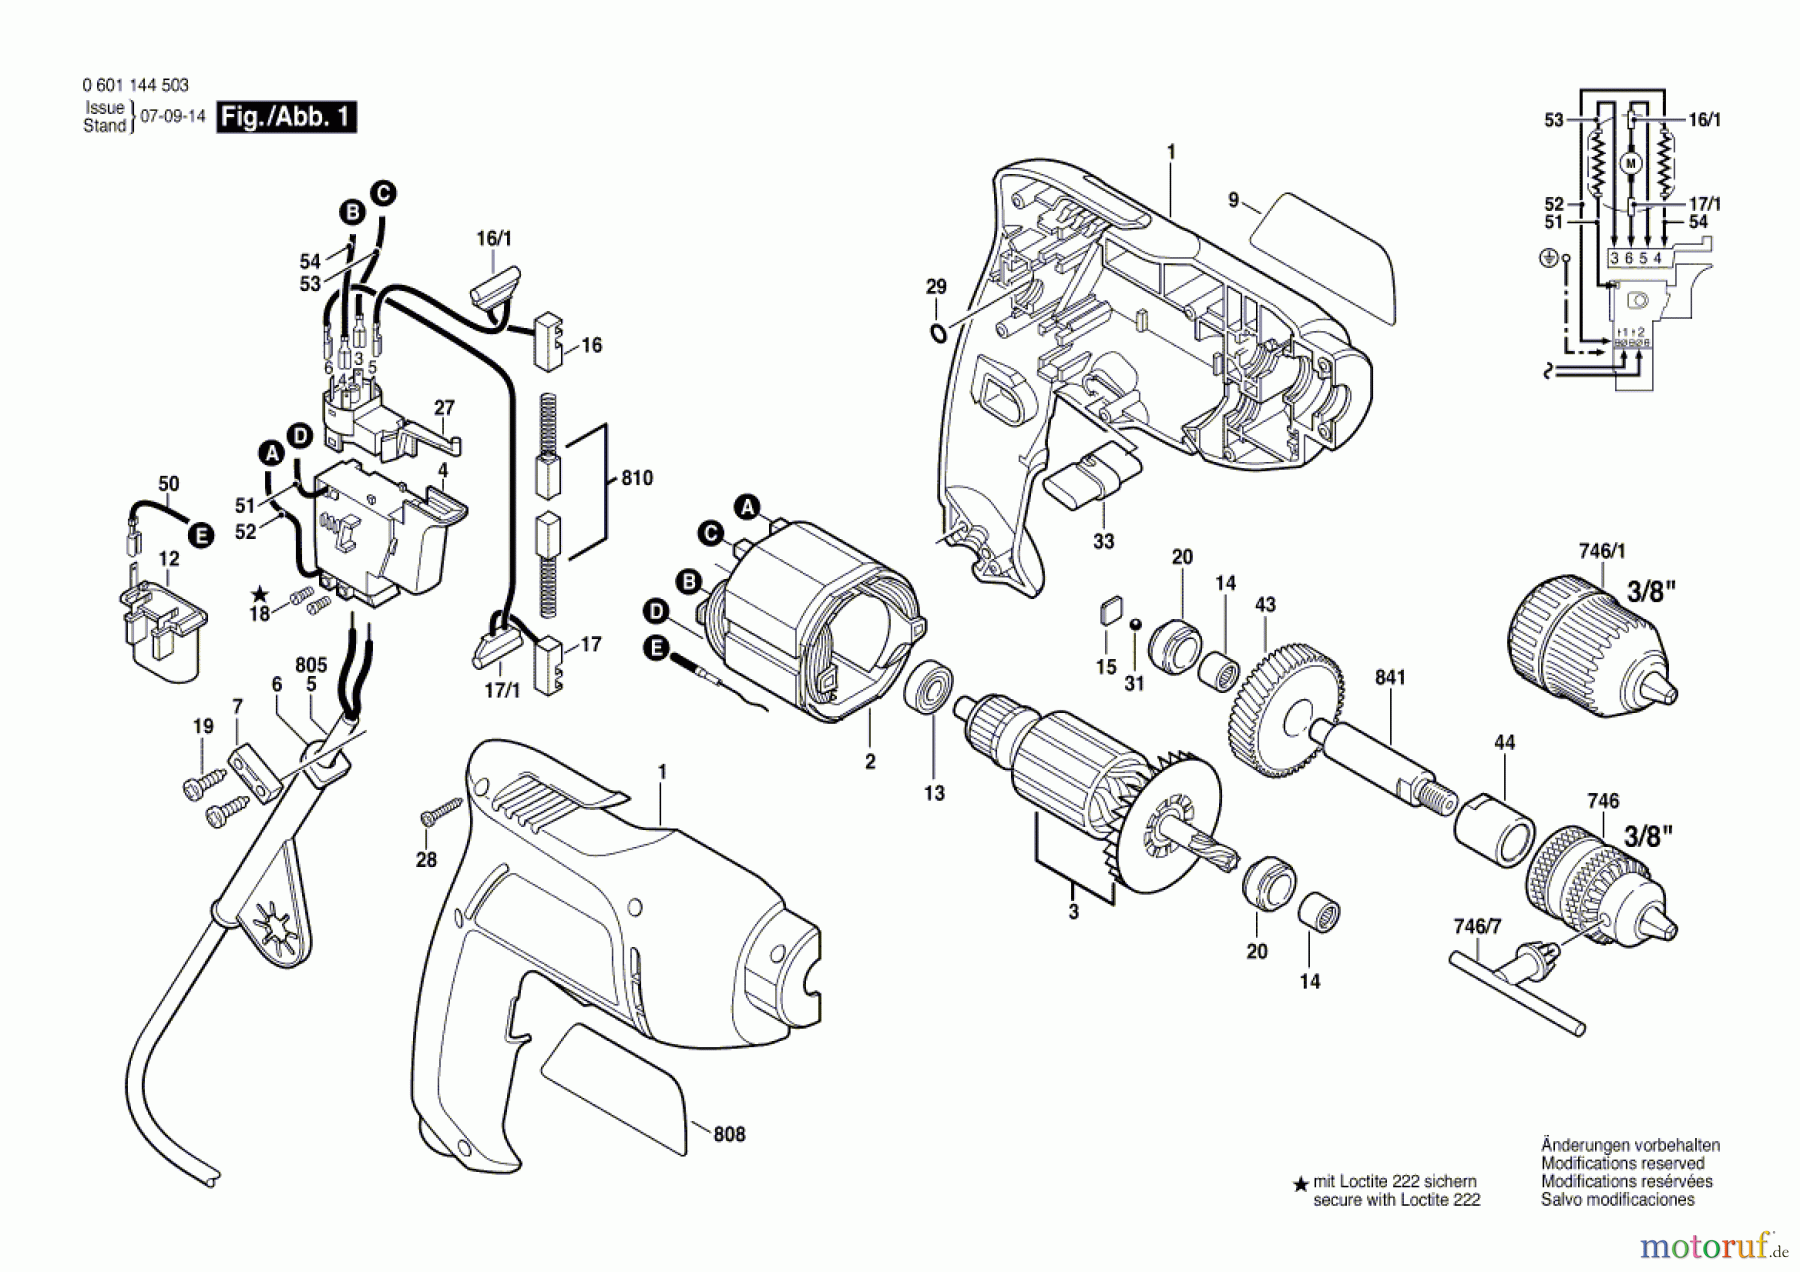  Bosch Werkzeug Bohrmaschine GBM 450 RE Seite 1